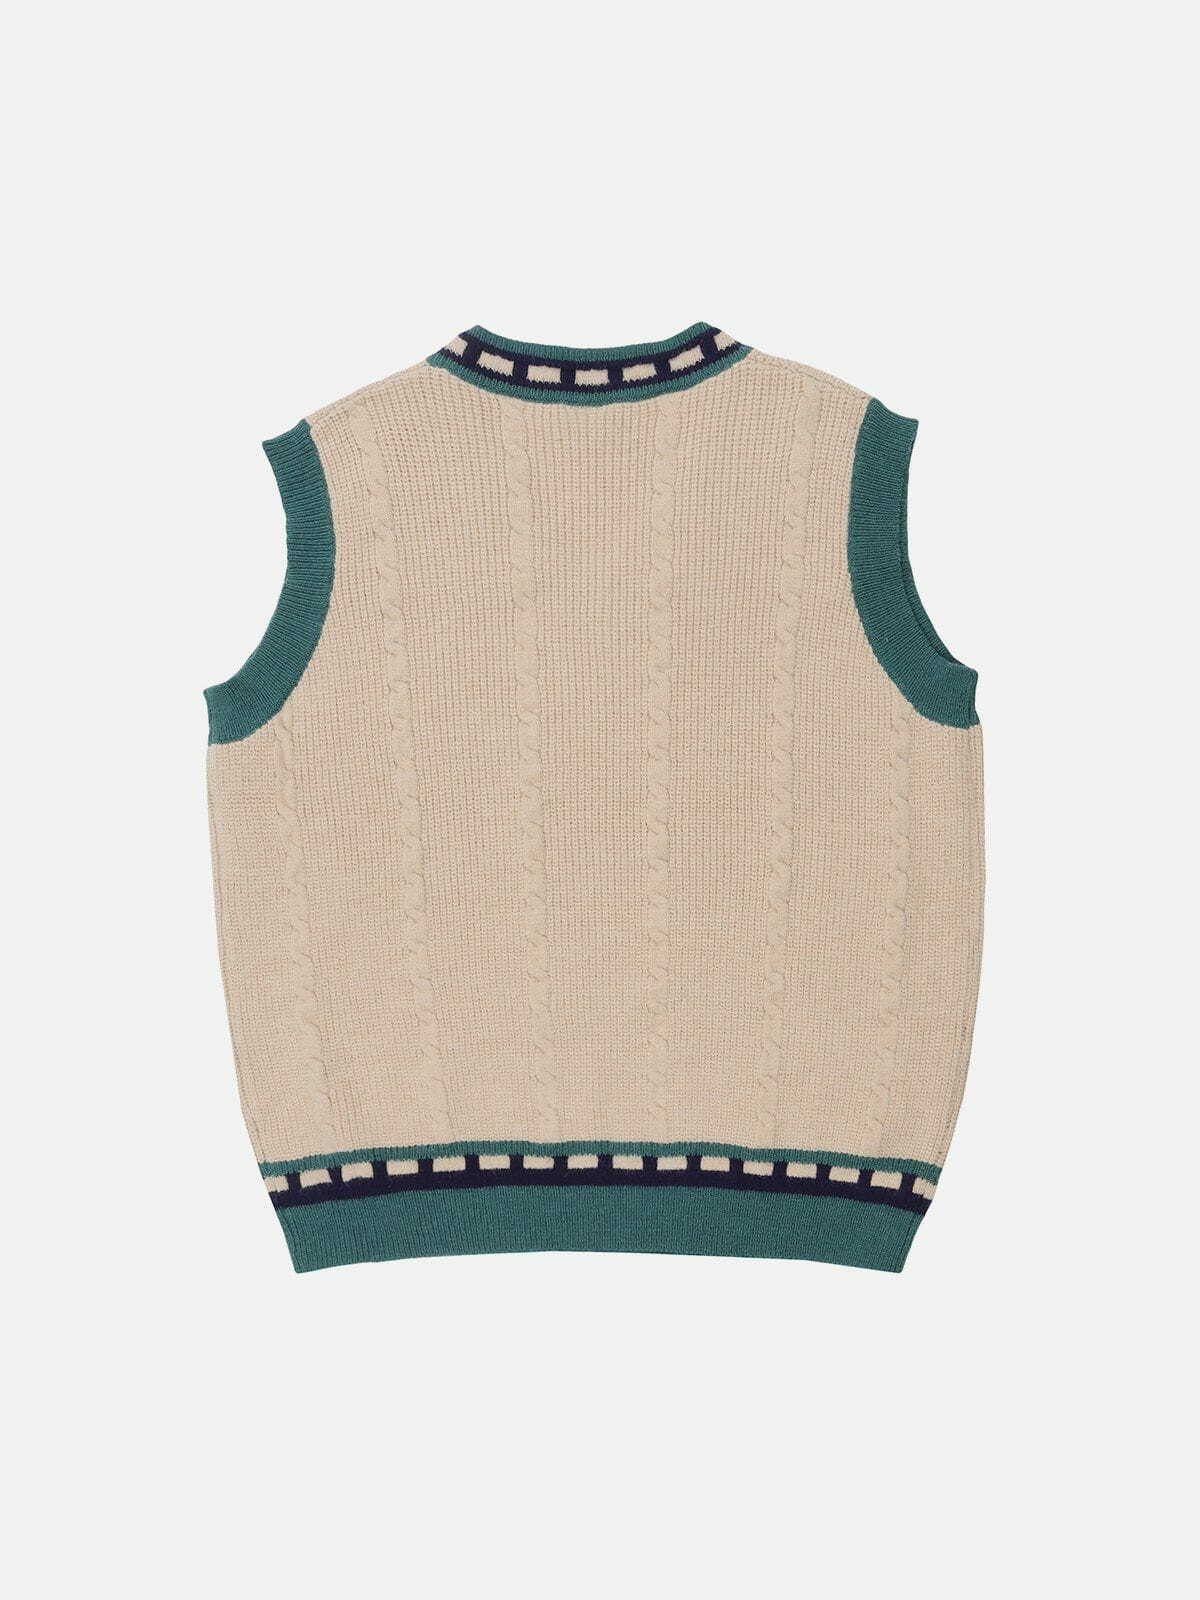 embroidered patchwork sweater vest urban fashion statement 4721